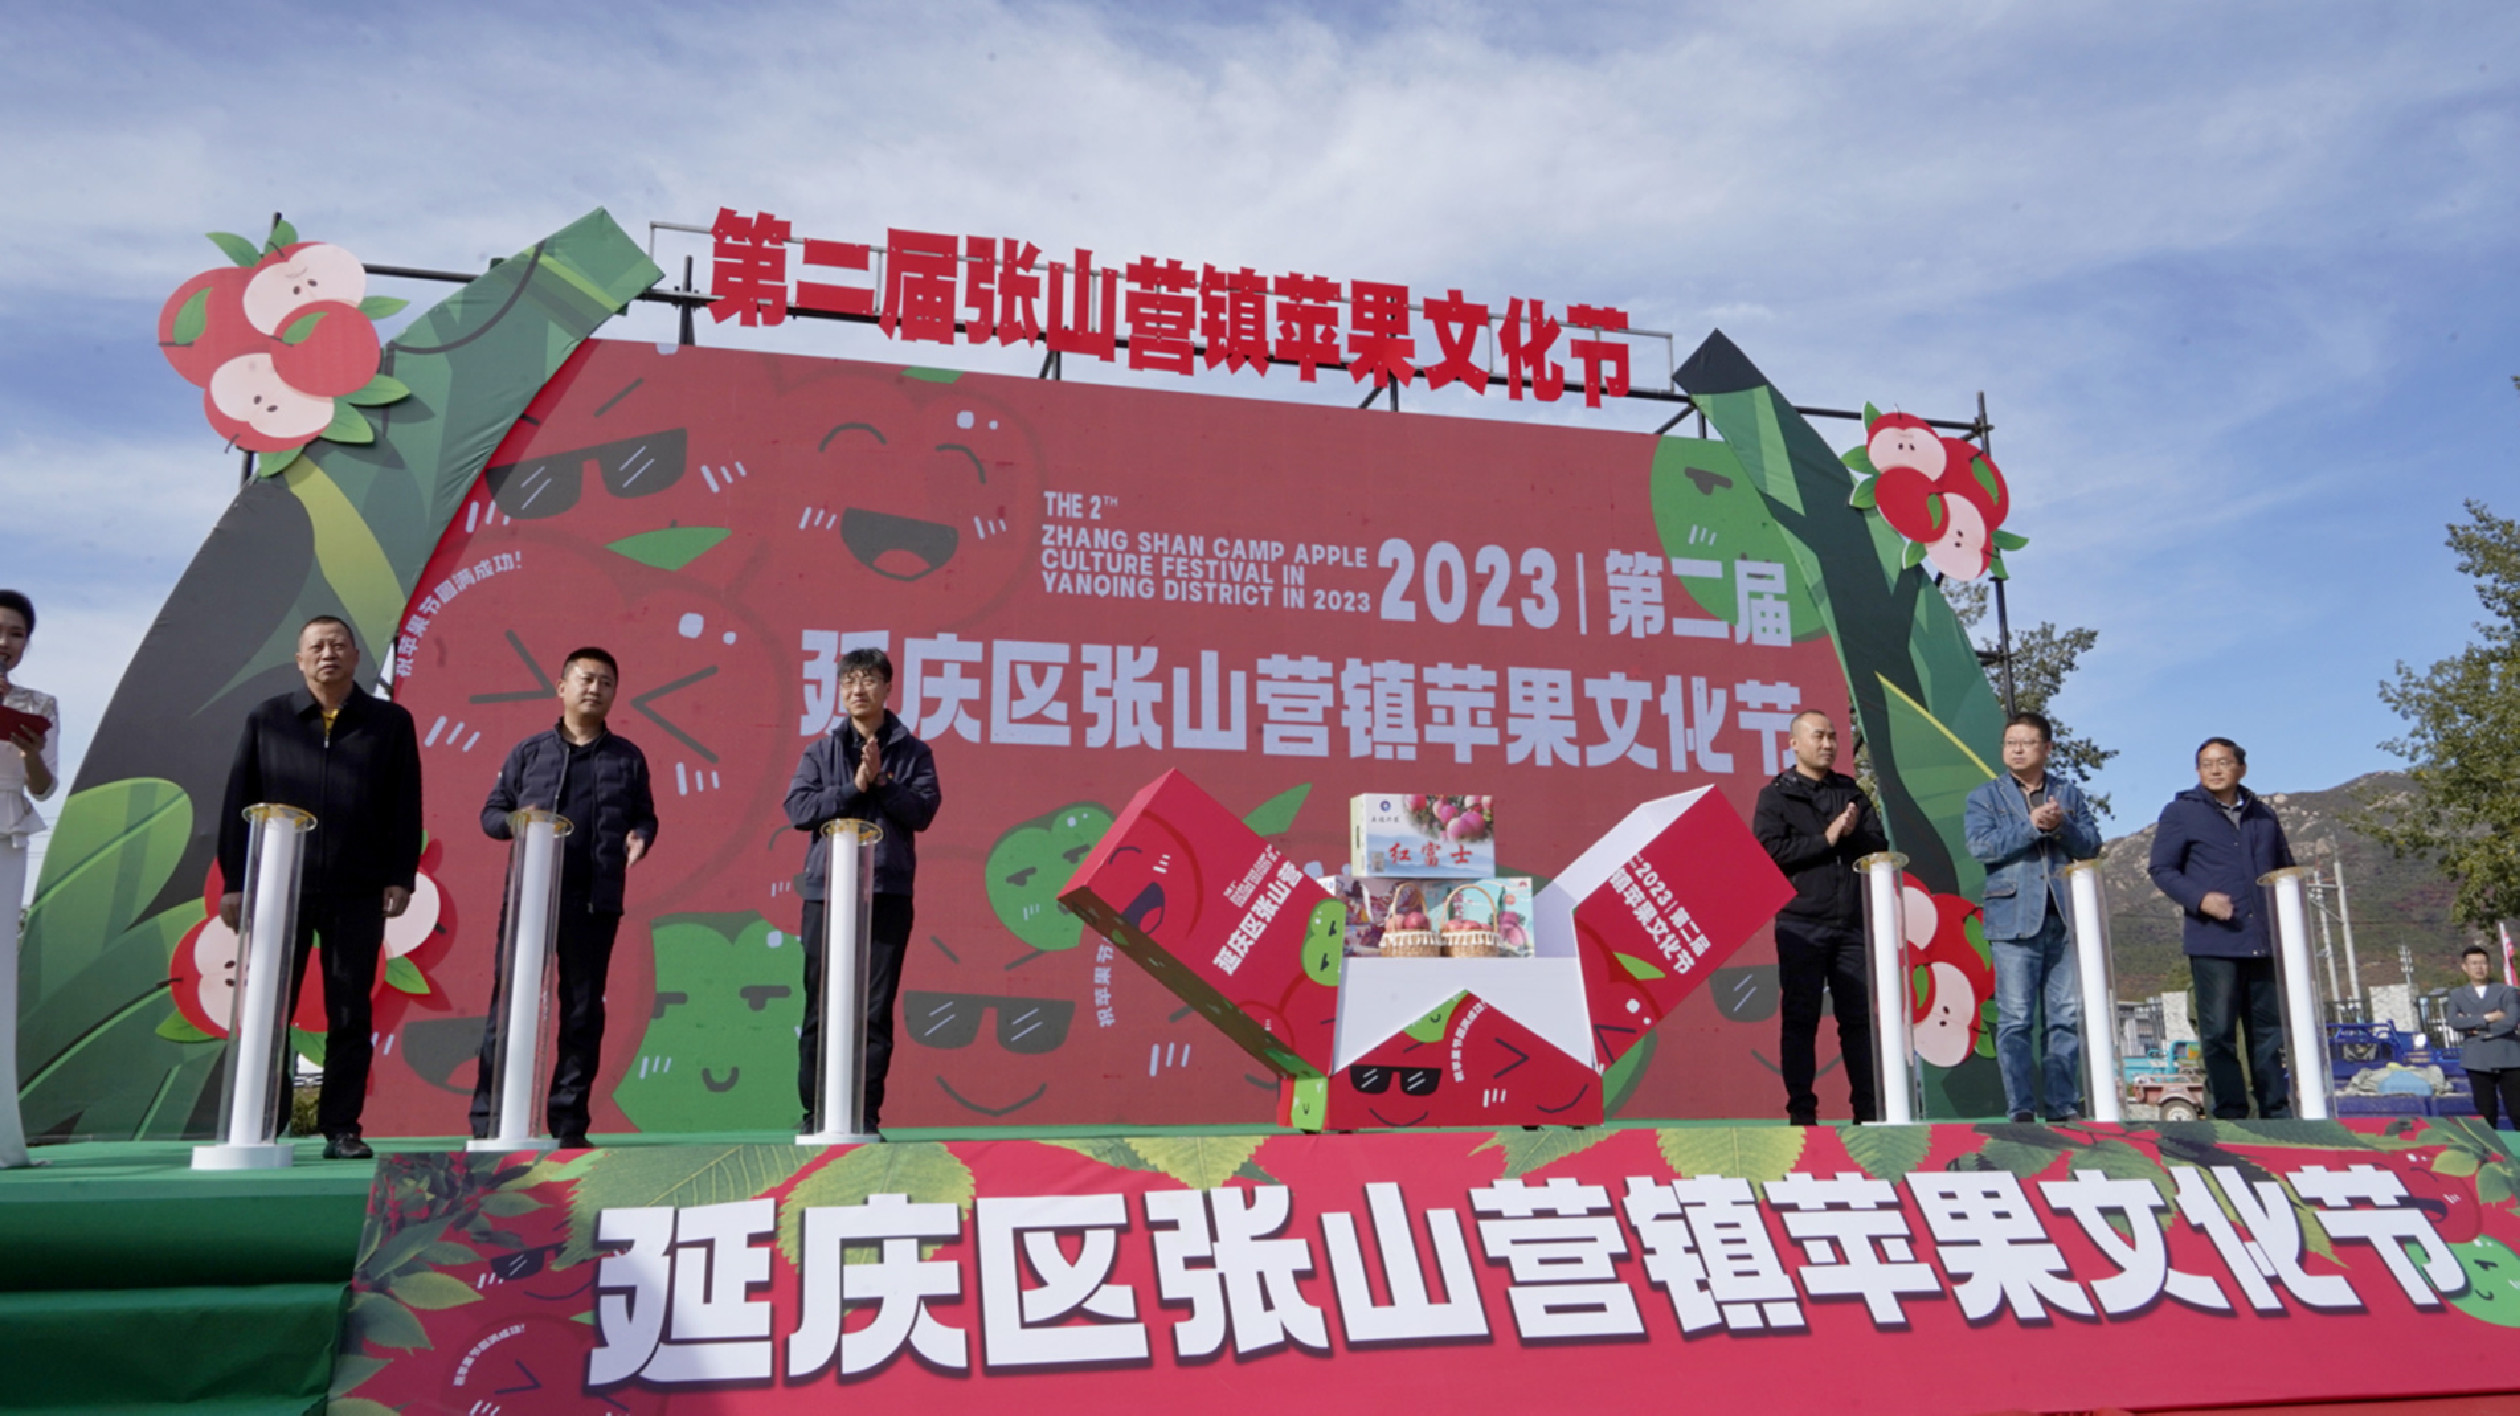 北京延慶張山營第二屆蘋果文化節開幕  200萬斤蘋果喜獲豐收